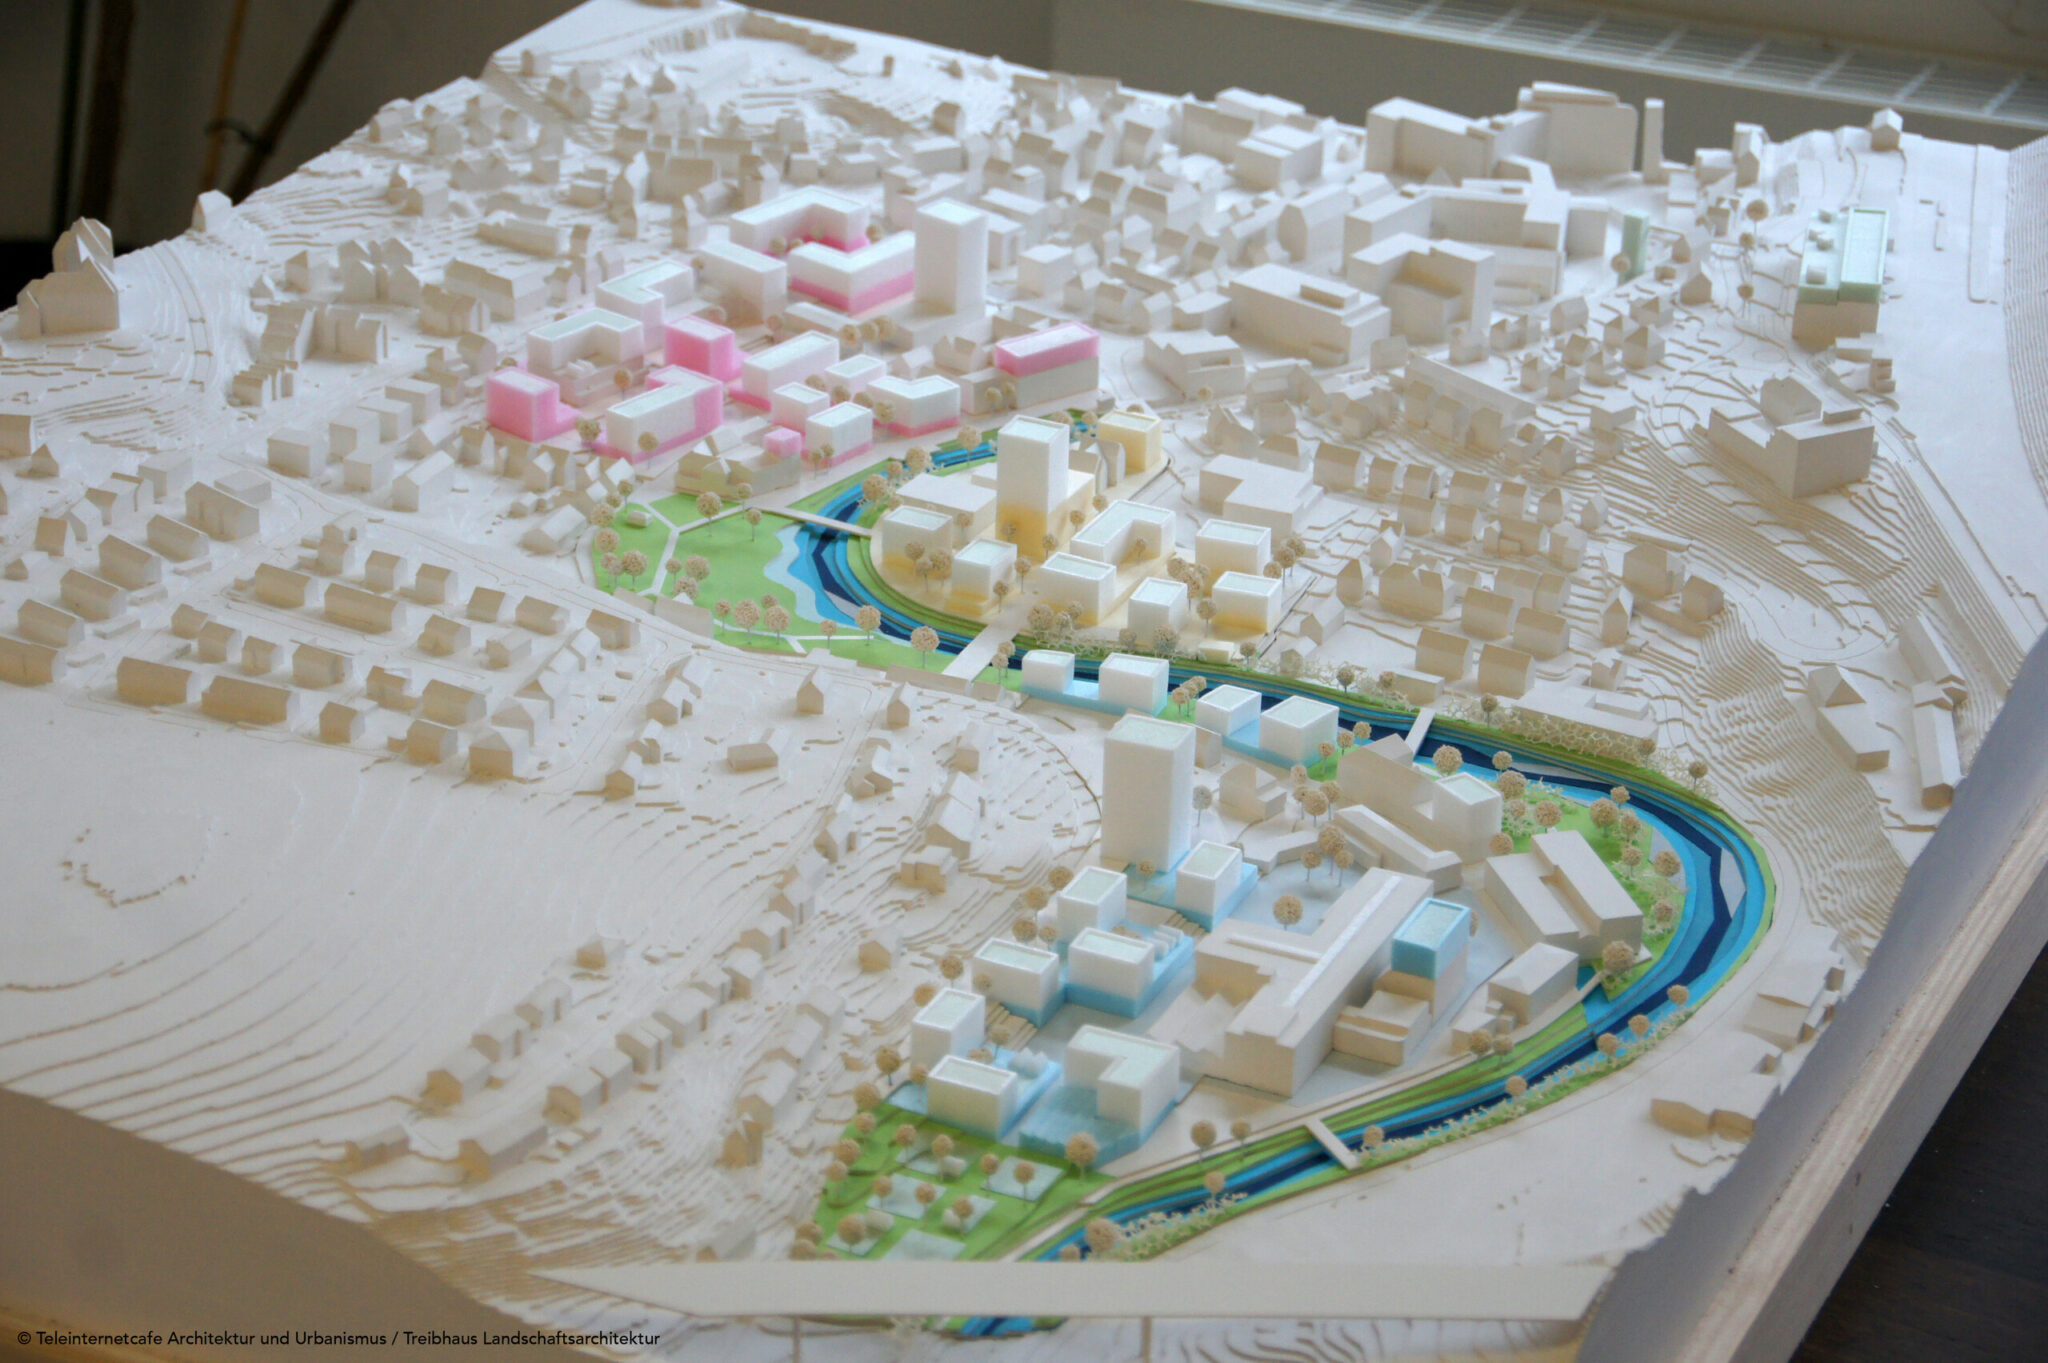 Wettbewerb »Quartier Backnang West«: Modell des Siegerentwurfs von Teleinternetcafe Architektur und Urbanismus zusammen mit Treibhaus Landschaftsarchitektur (Bild: Teleinternetcafe / Treibhaus)